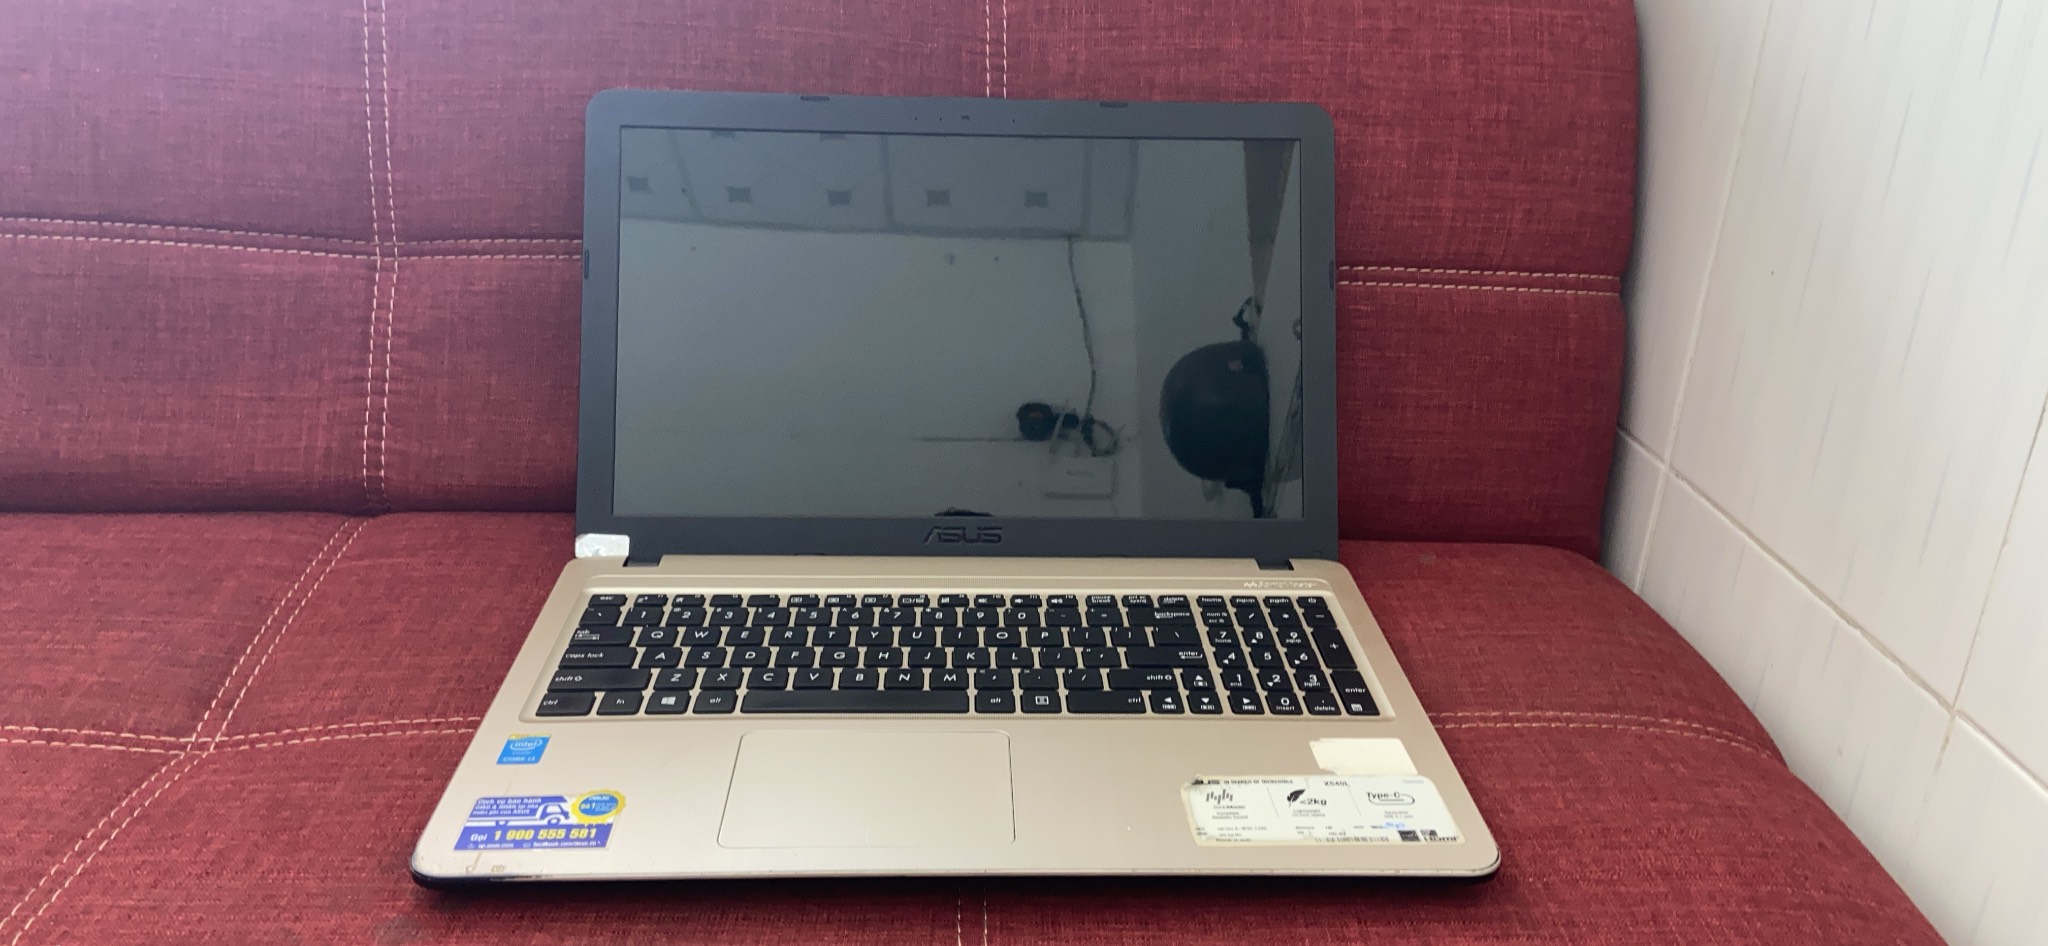 laptop-asus-x450laxx265d-i3-gen-5